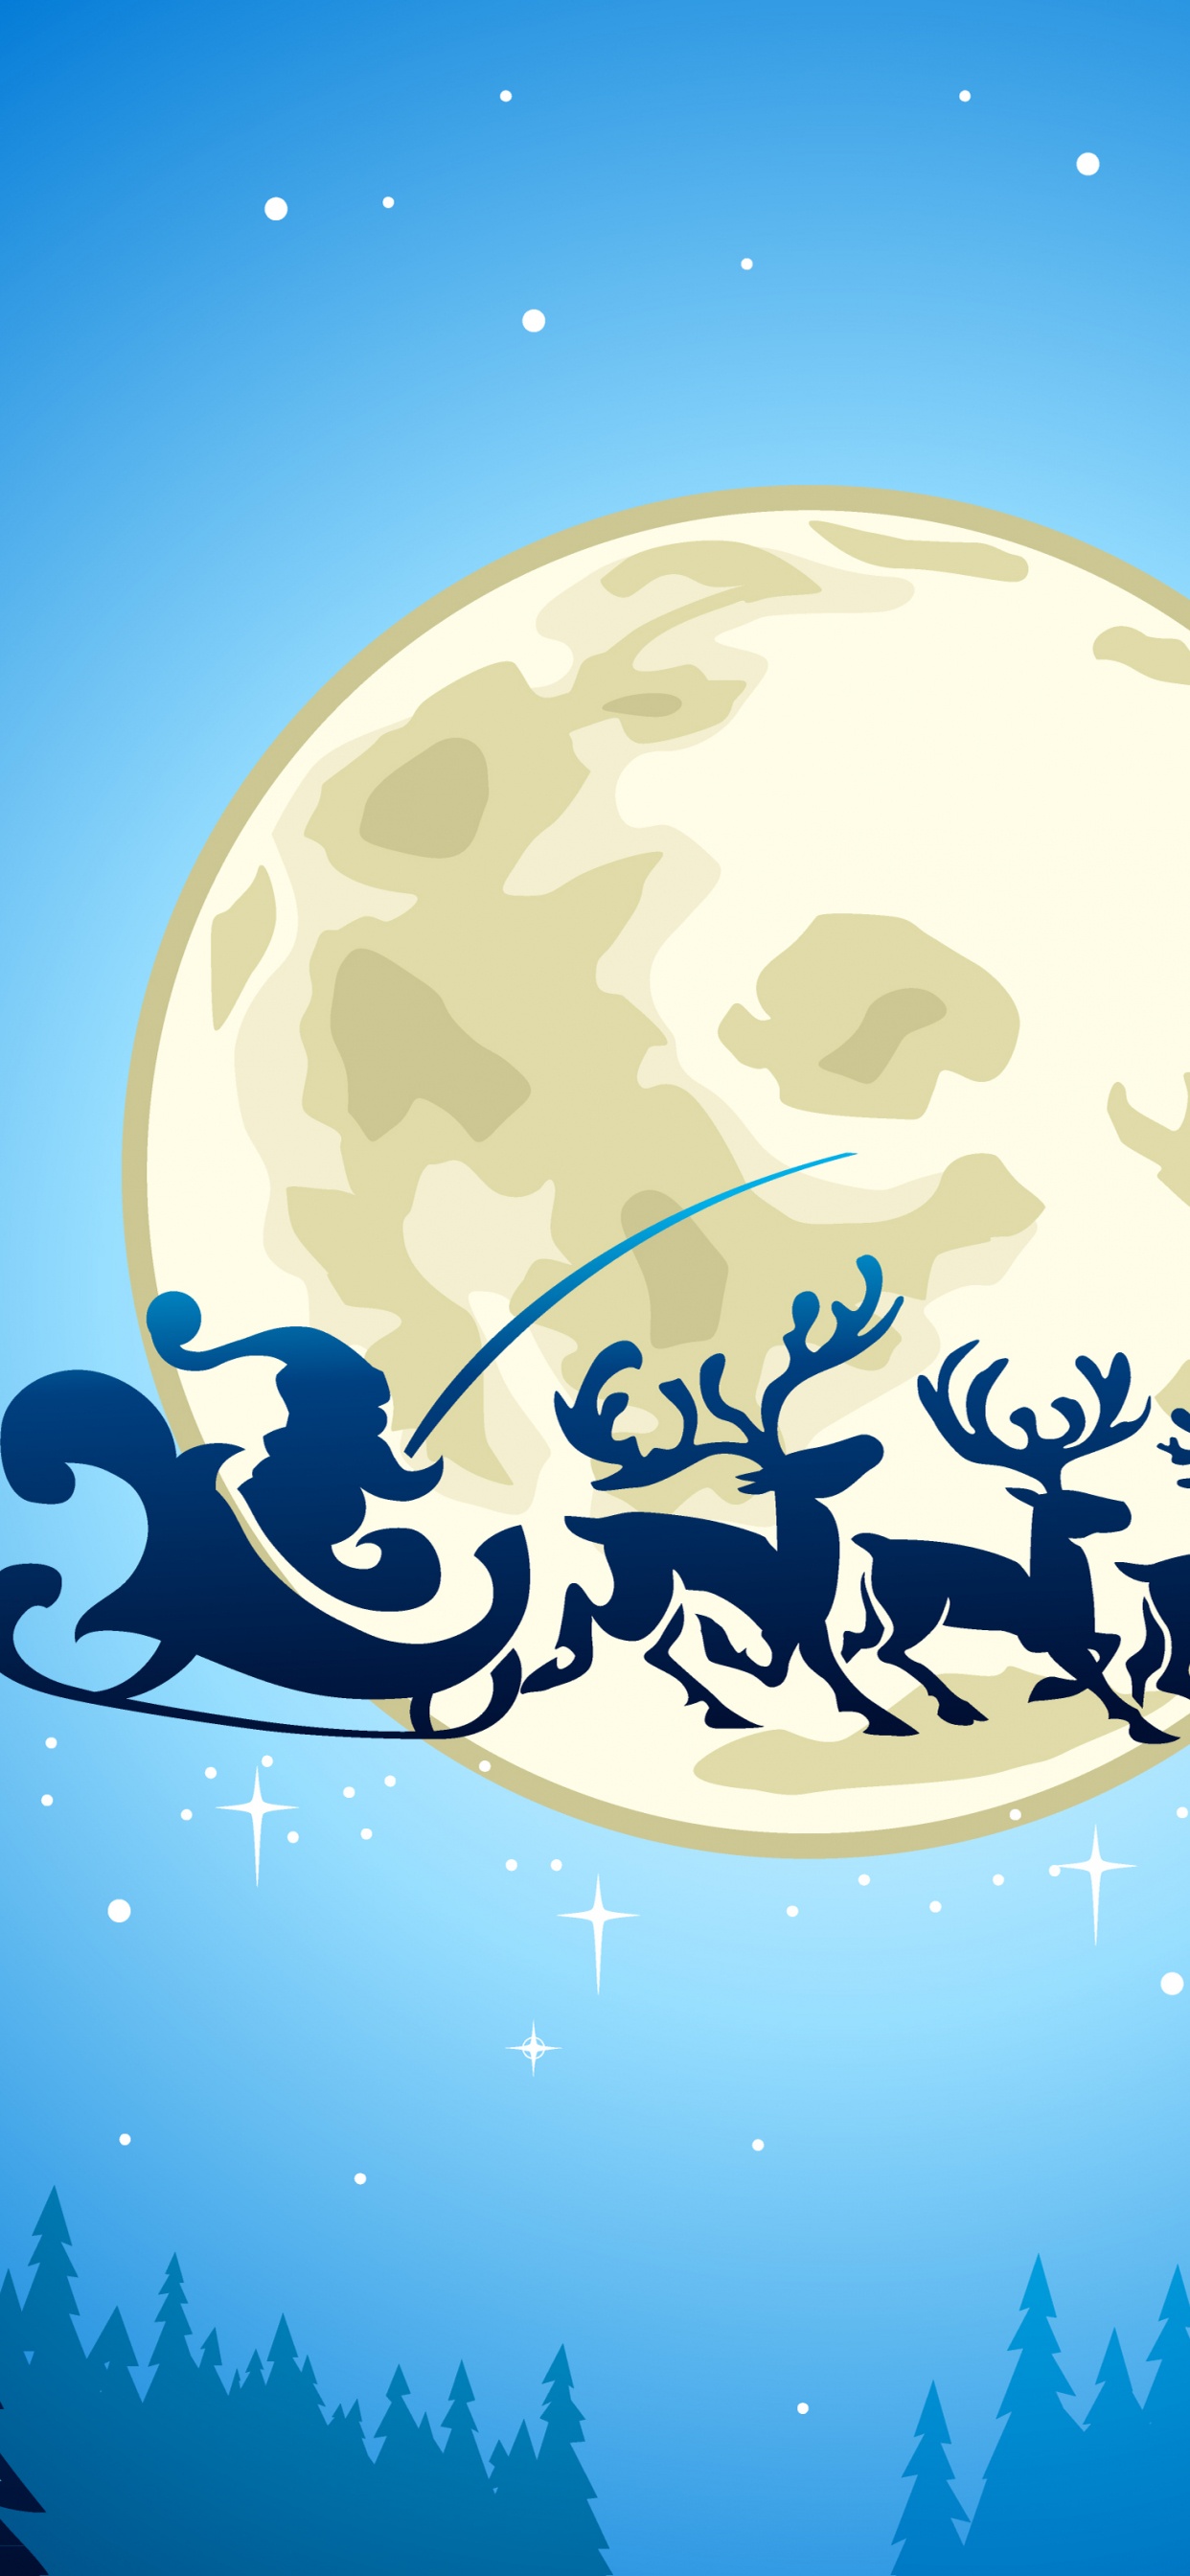 Le Jour De Noël, Santa Claus, Illustration, Ded Moroz, Blue. Wallpaper in 1242x2688 Resolution